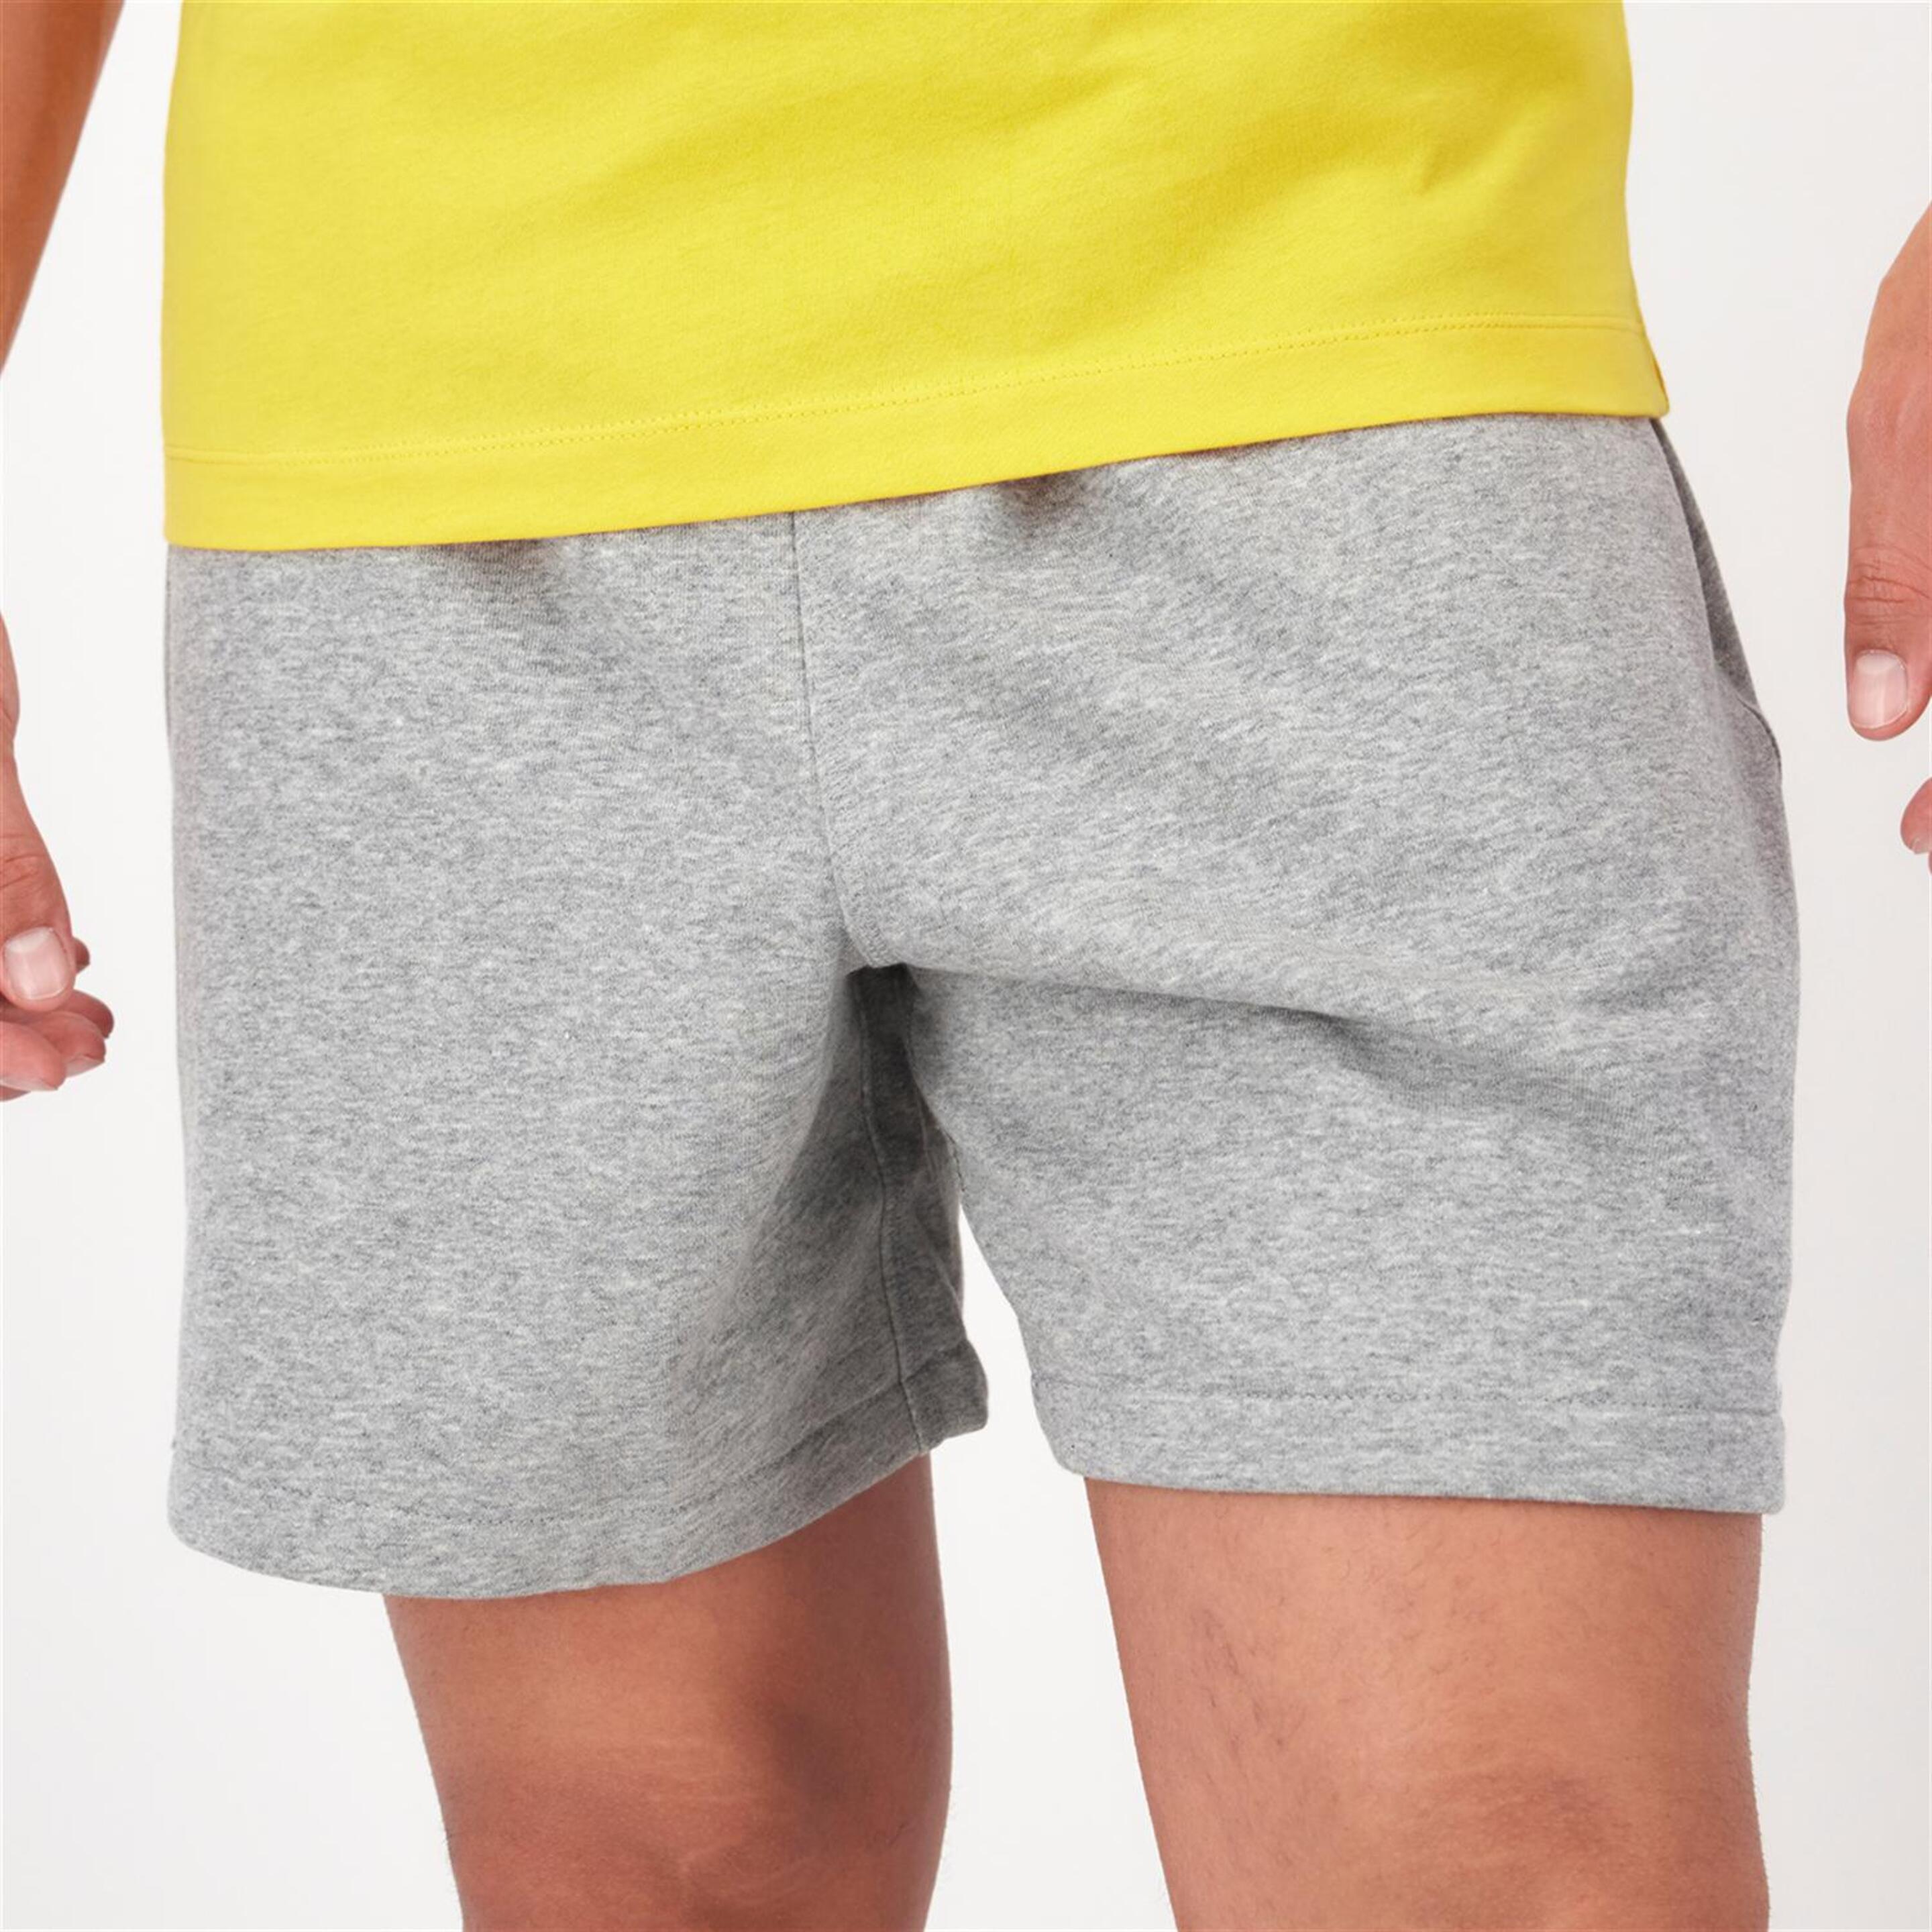 Nike Club - Gris - Pantalón Corto Hombre